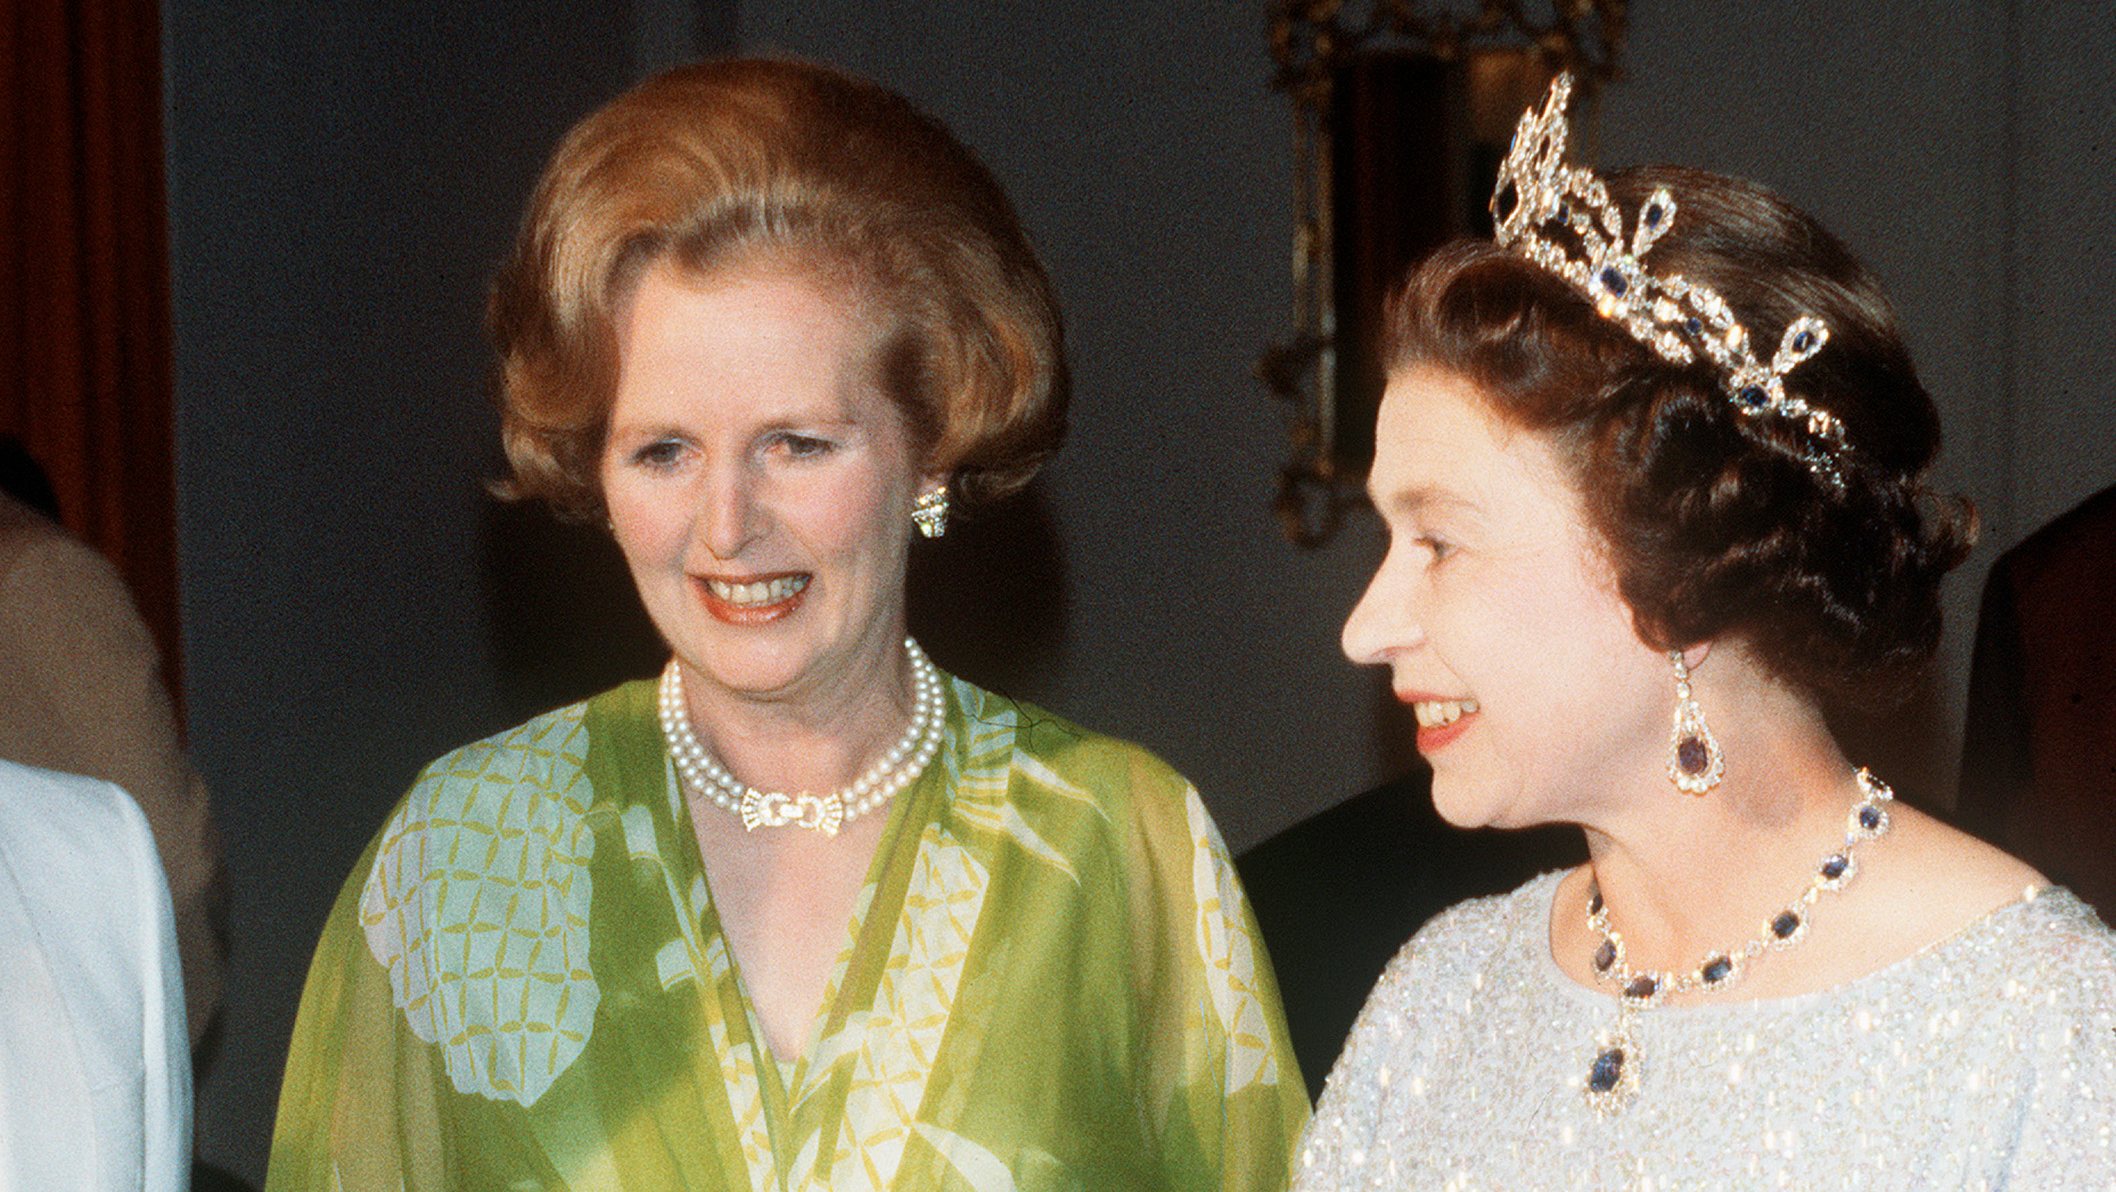 ZMB: Queen Elizabeth II and Margaret Thatcher visit Zambia